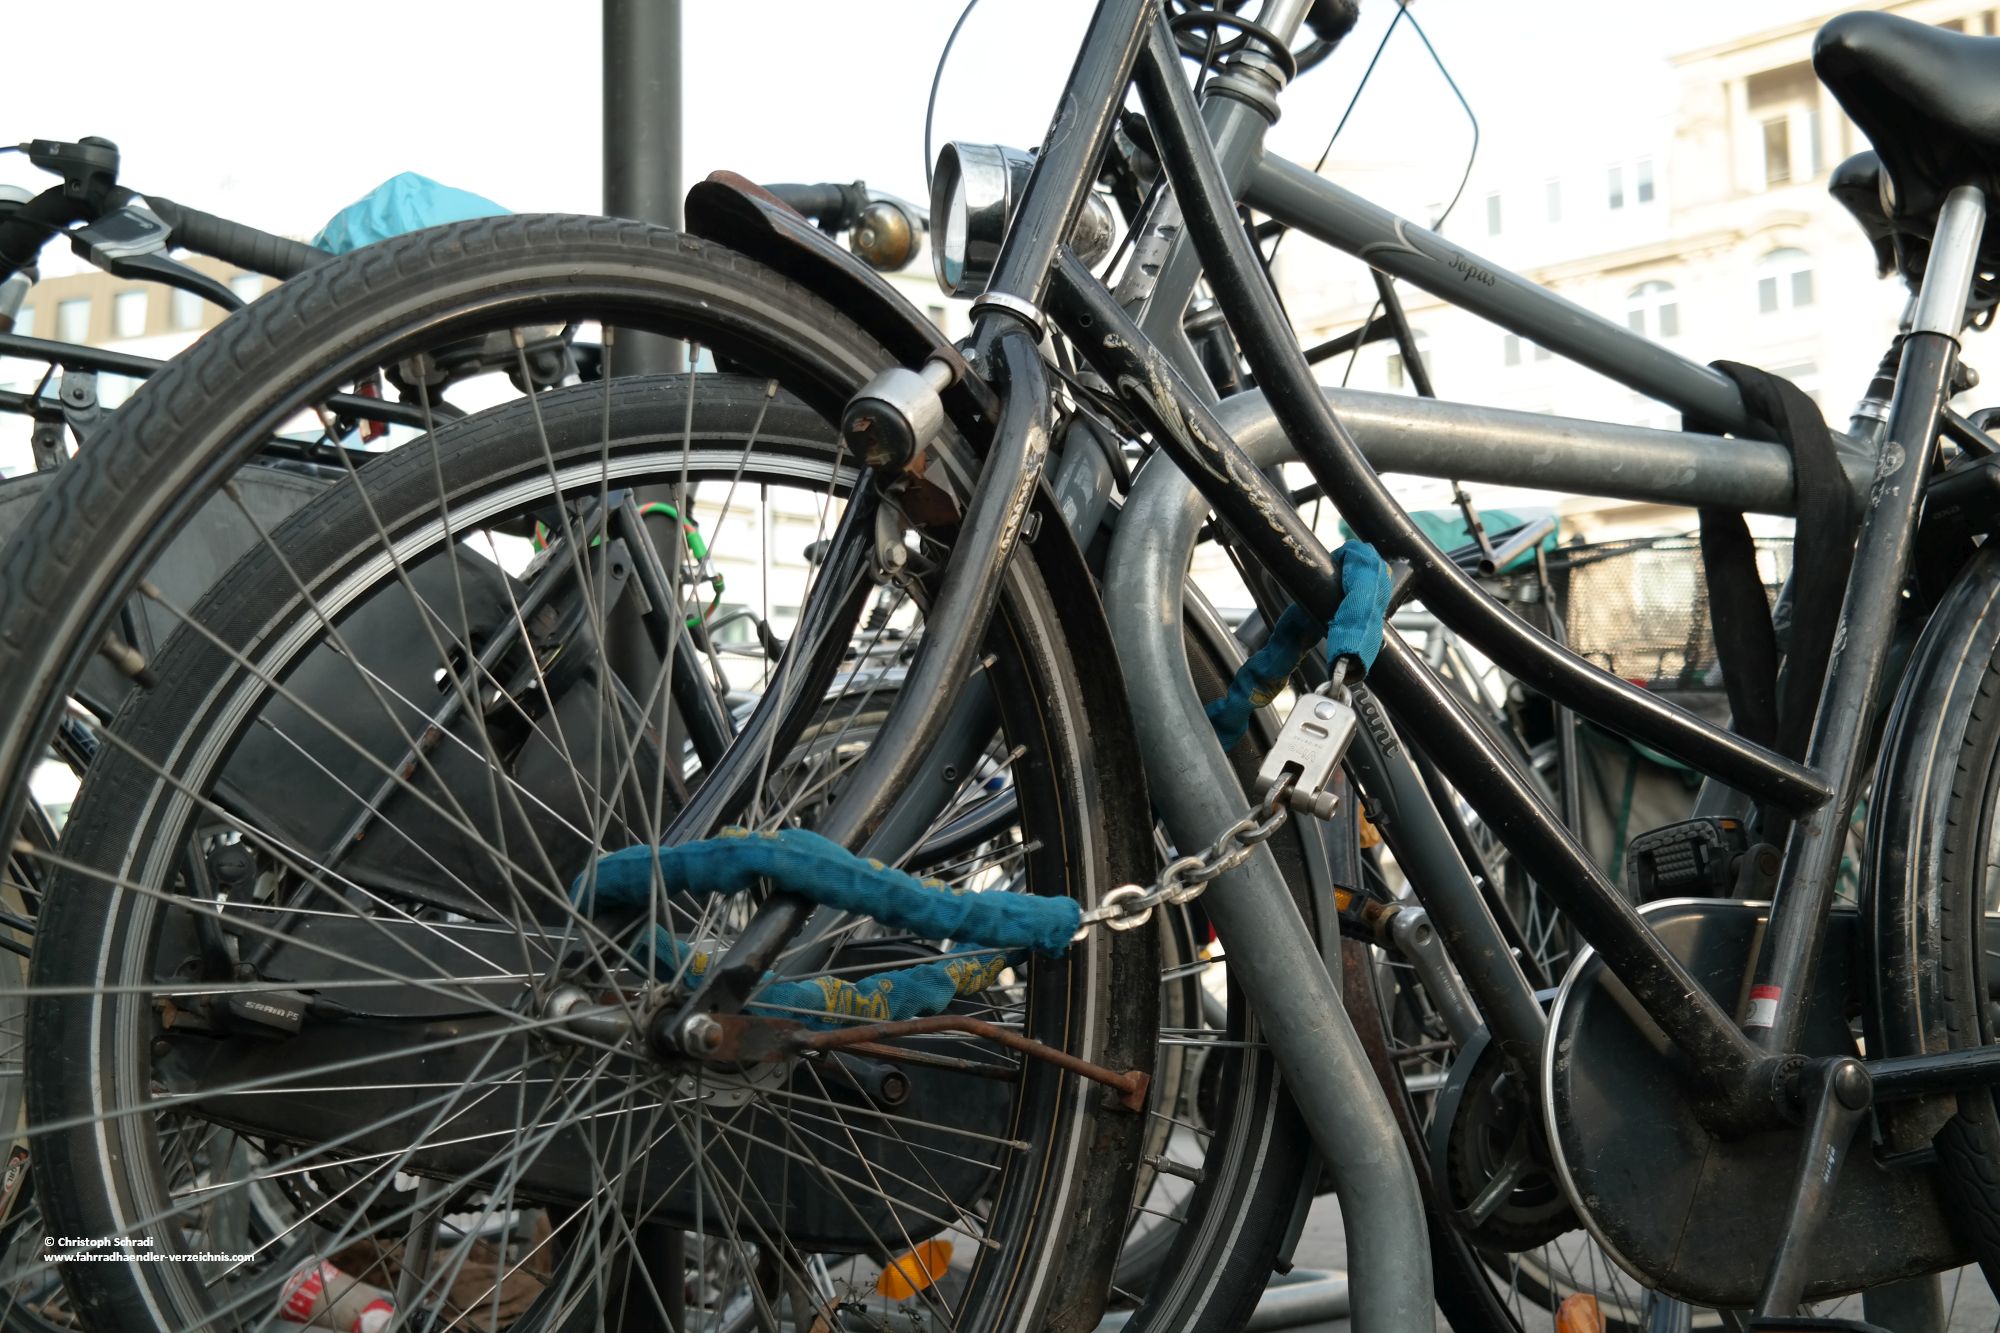 Der Bikesafe der Firma Wöhr könnte bald an Bahnhöfen und anderen öffentlichen Stellen stehen - Trocken und gegen Diebstahl geschützte Radunterbringung